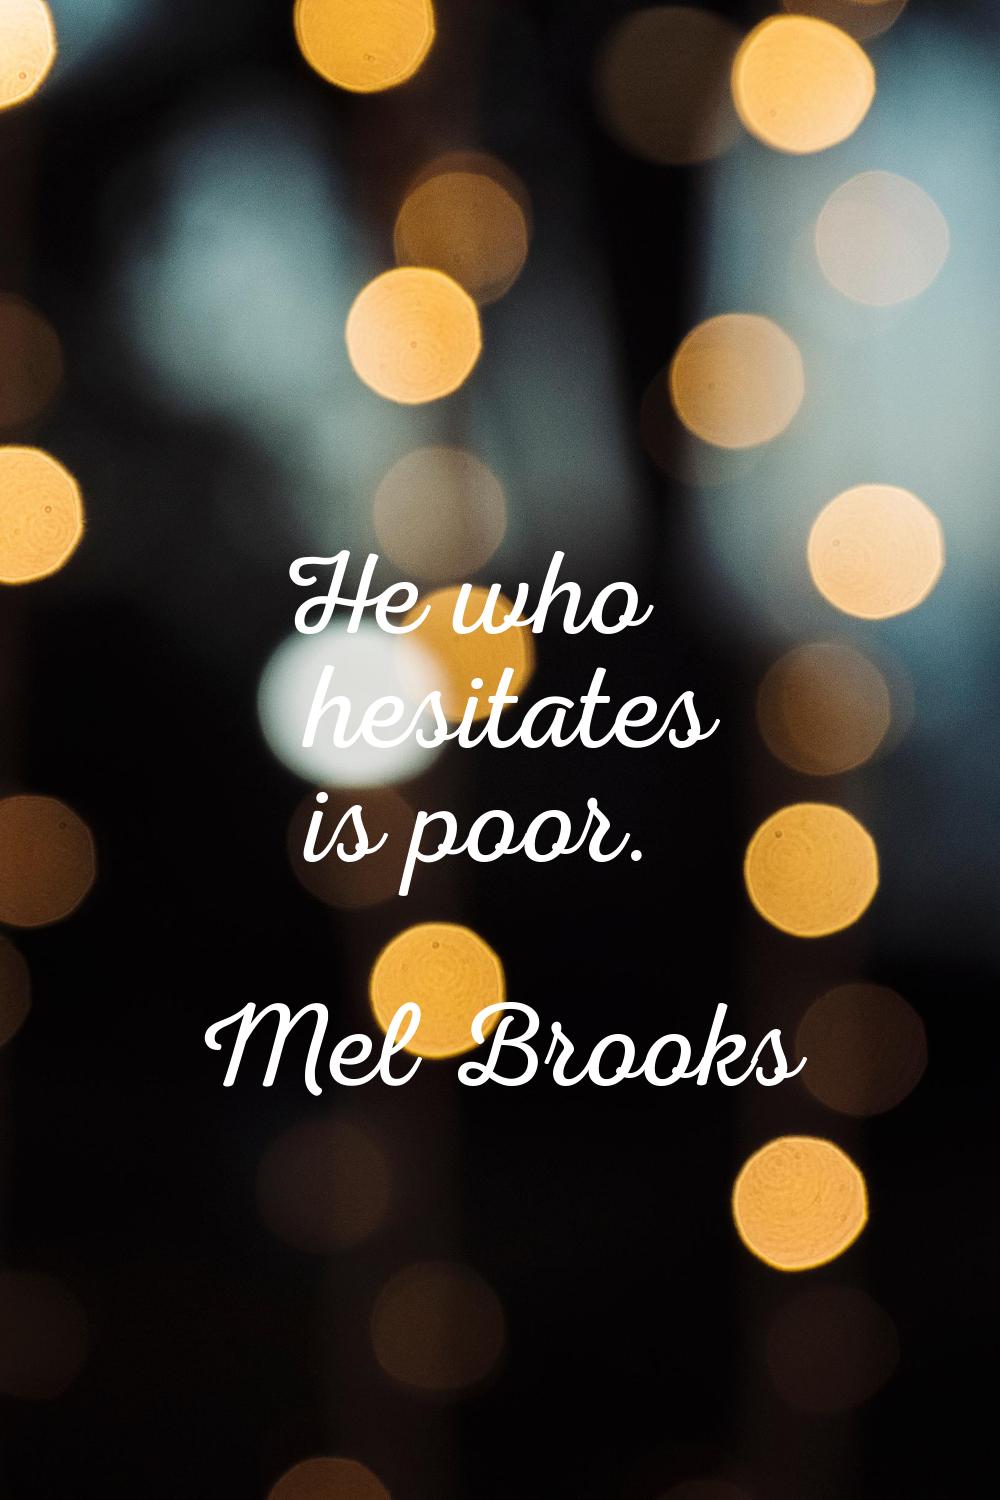 He who hesitates is poor.